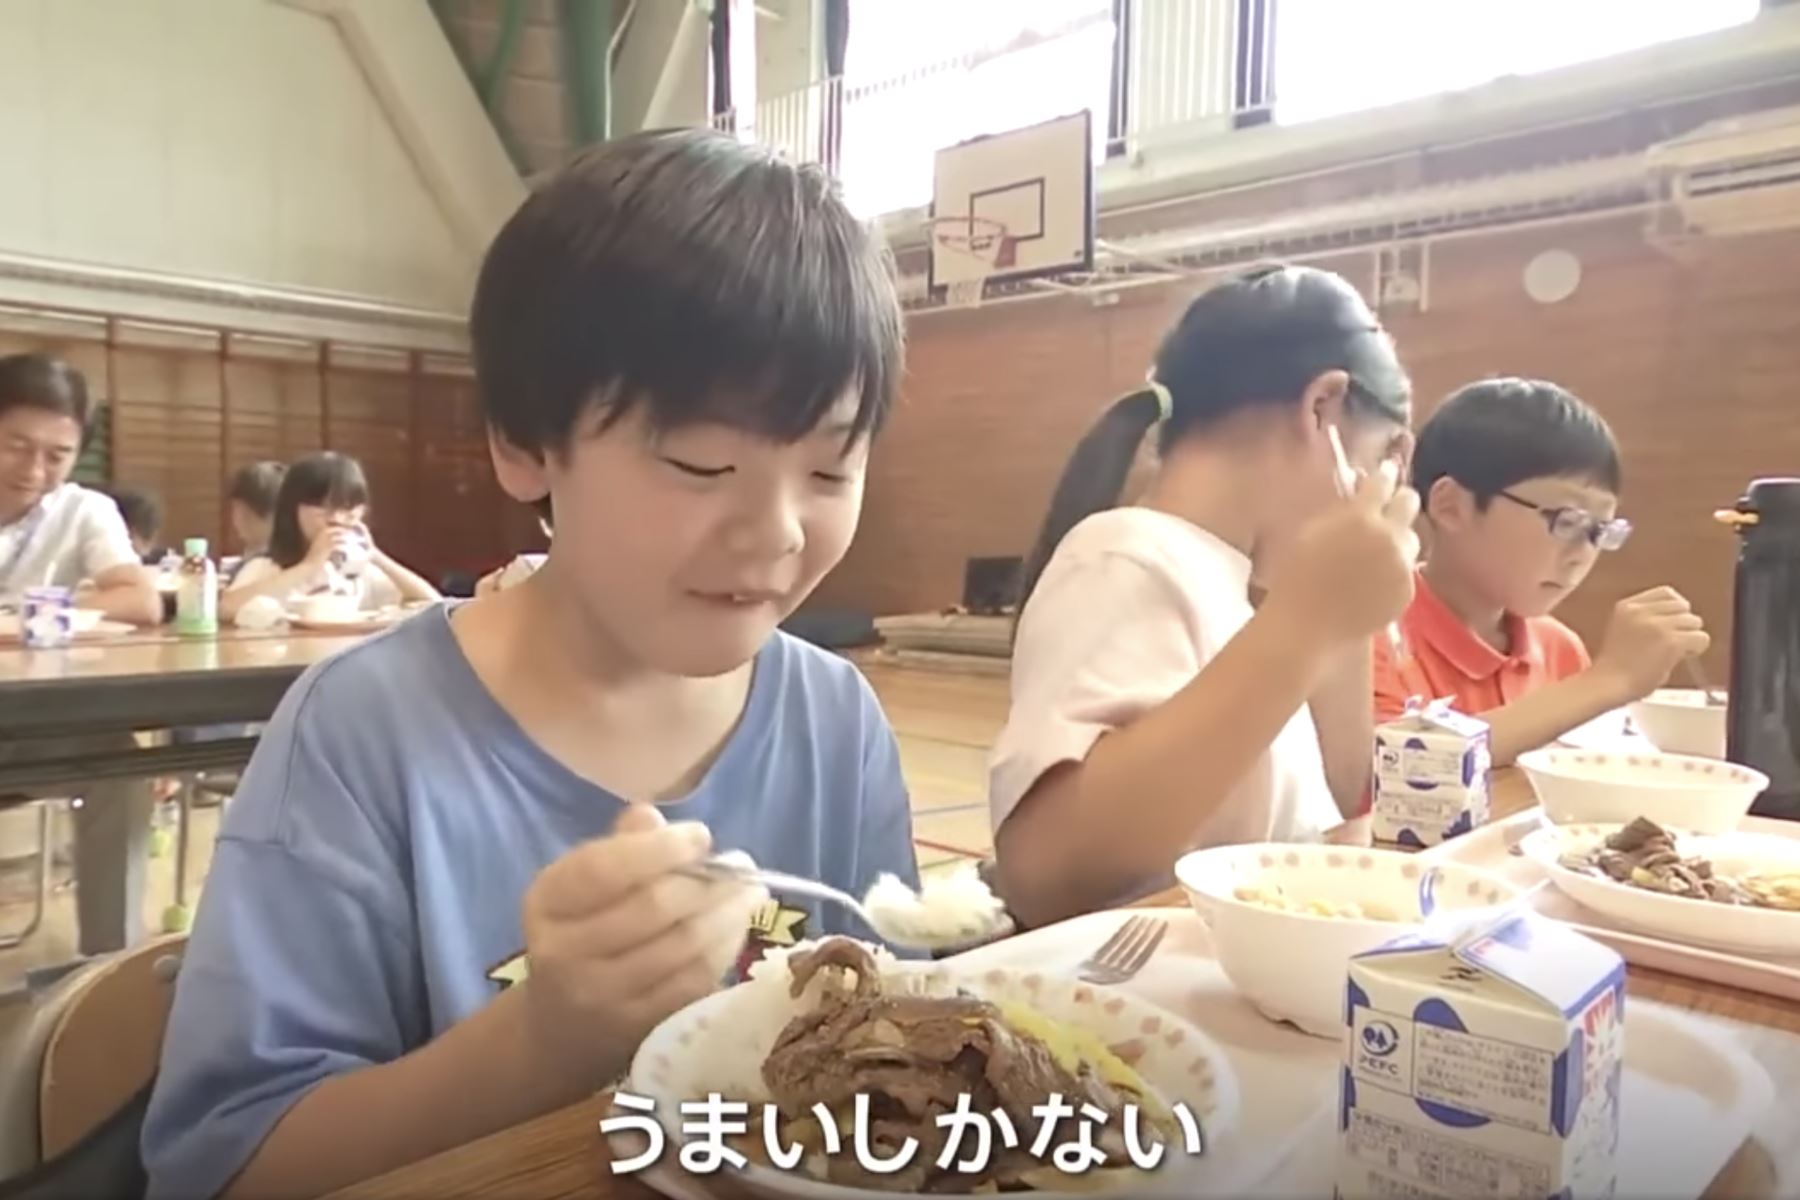 Lomo saltado y guiso de quinua fueron los platos que se sirvieron en el almuerzo de la escuela del distrito de Shibuya, Japón, Foto: Captura TV